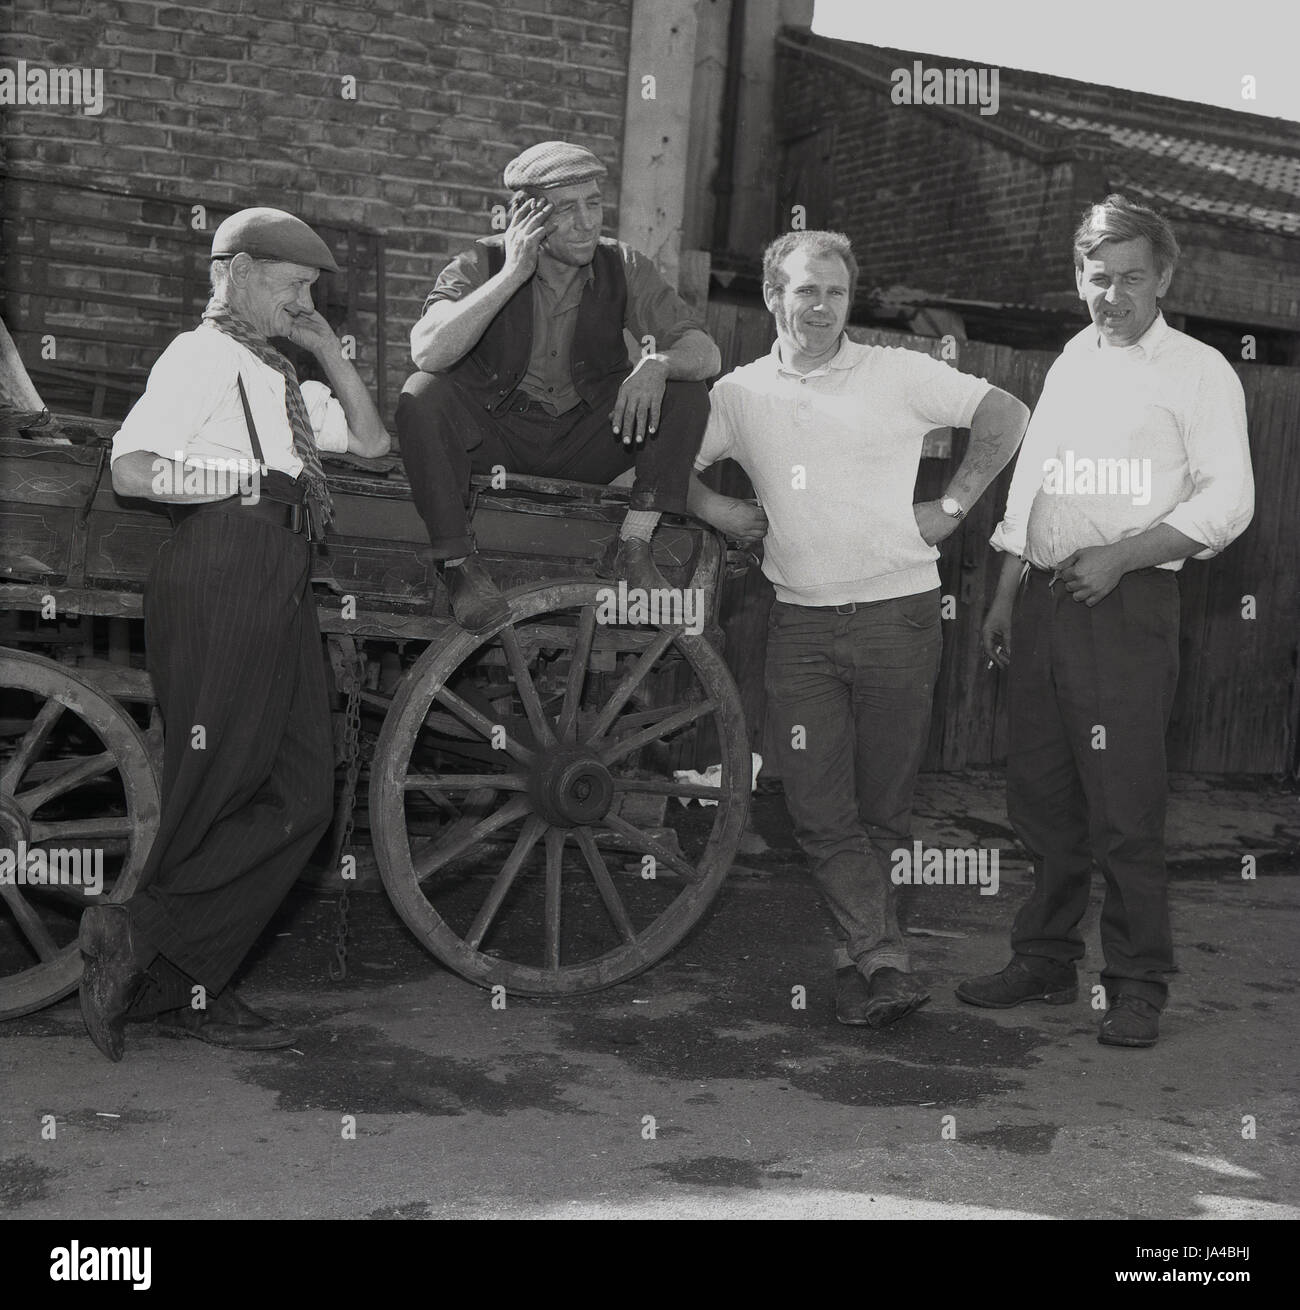 1971, historische, Gruppe von erwachsenen männlichen wankt oder Lappen und Knochen Männer posieren für ein Bild außerhalb von ihrer alten hölzernen Rädern Wagen. Stockfoto